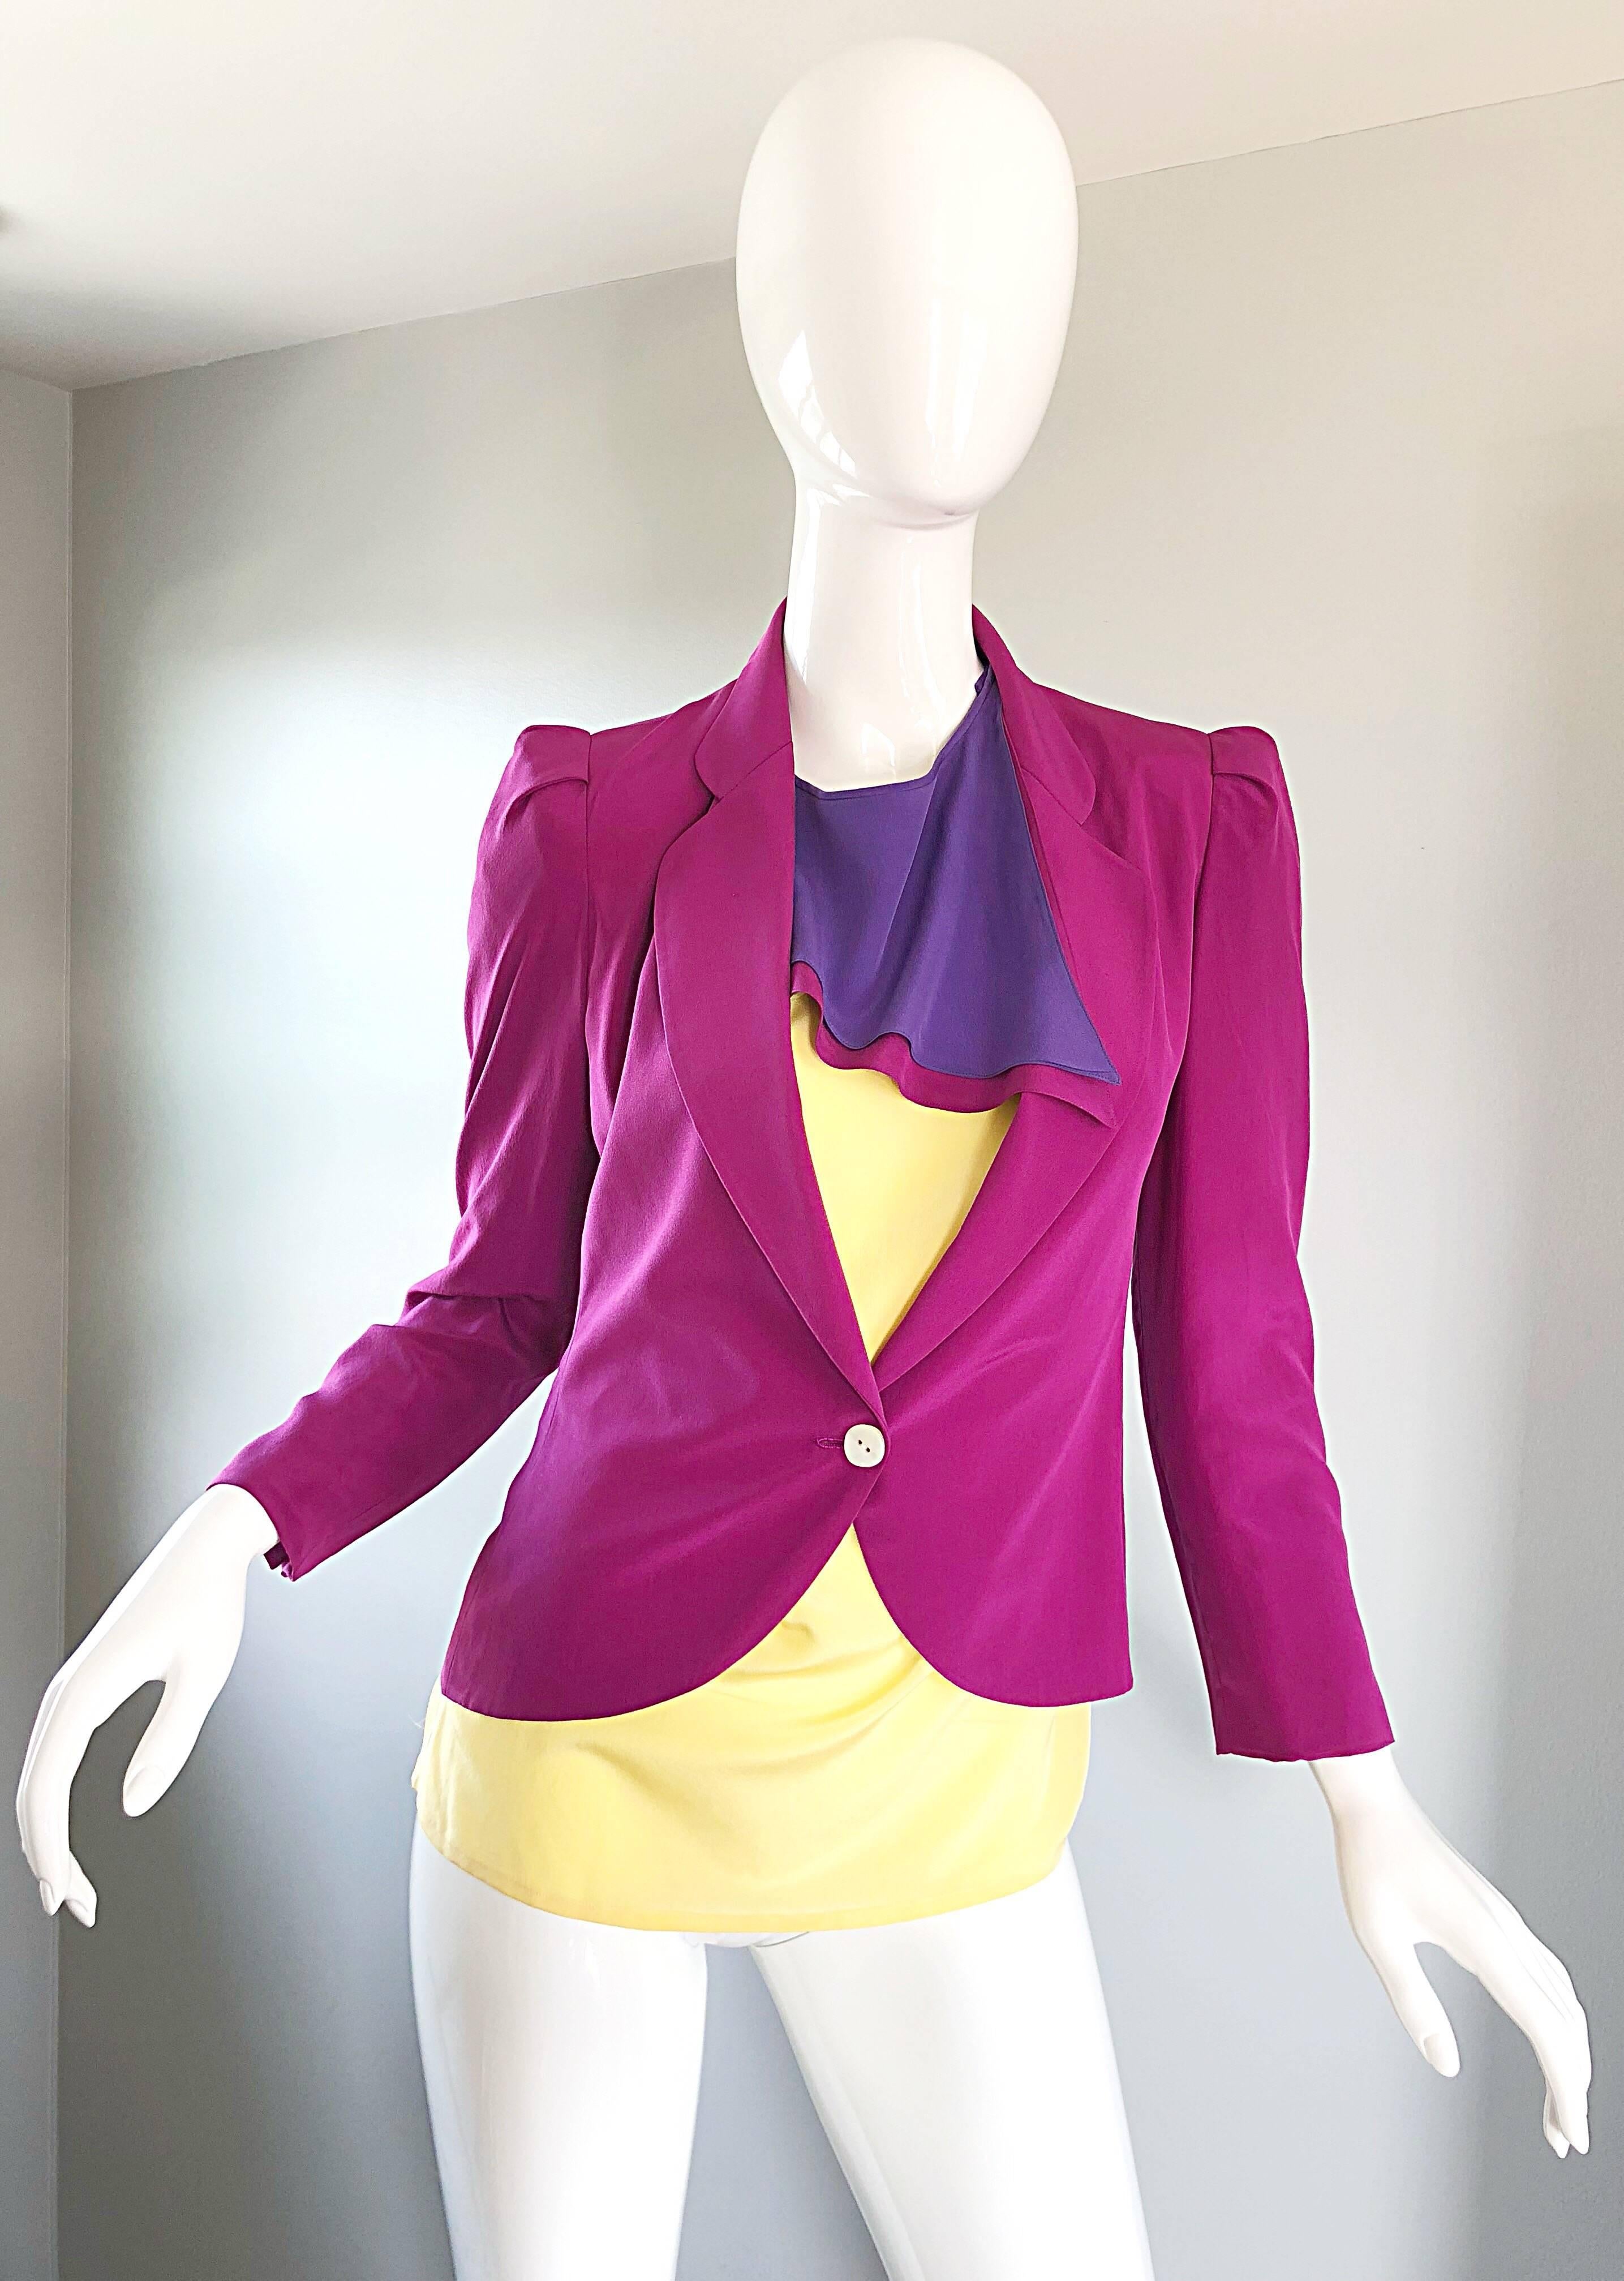 Chic blouse tunique vintage SALVATORE FERRAGOMO en soie rose fuchsia, violet et jaune pâle et veste blazer ajustée ! La tunique a une coupe avant-gardiste, avec un foulard attaché. Bouton en haut de l'encolure arrière. Le blazer ajusté est dans une